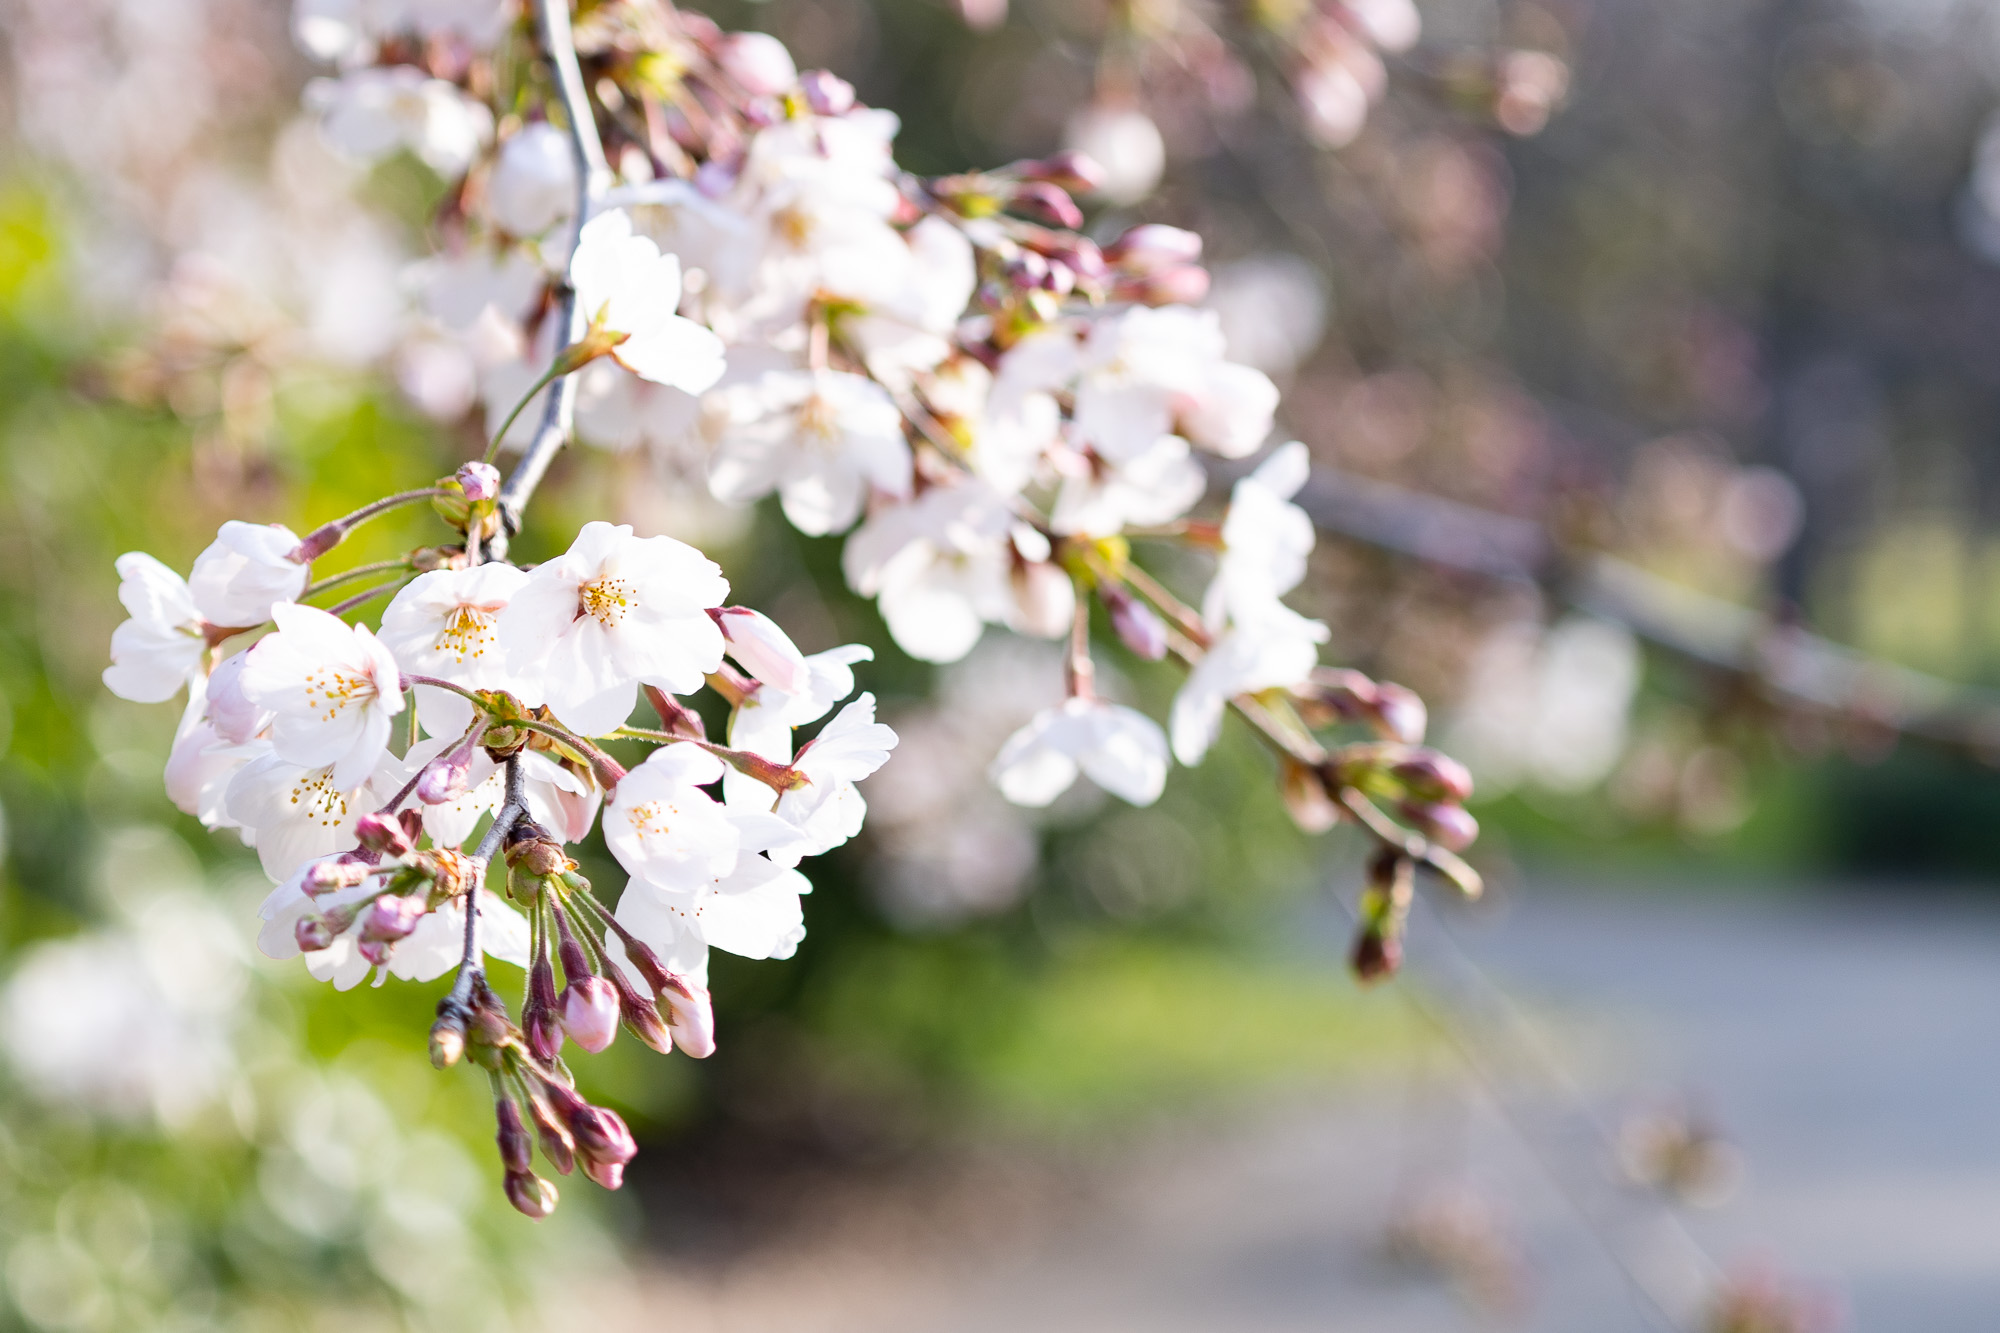 大阪城公園 桜 21年の開花情報 見ごろとアクセス方法について